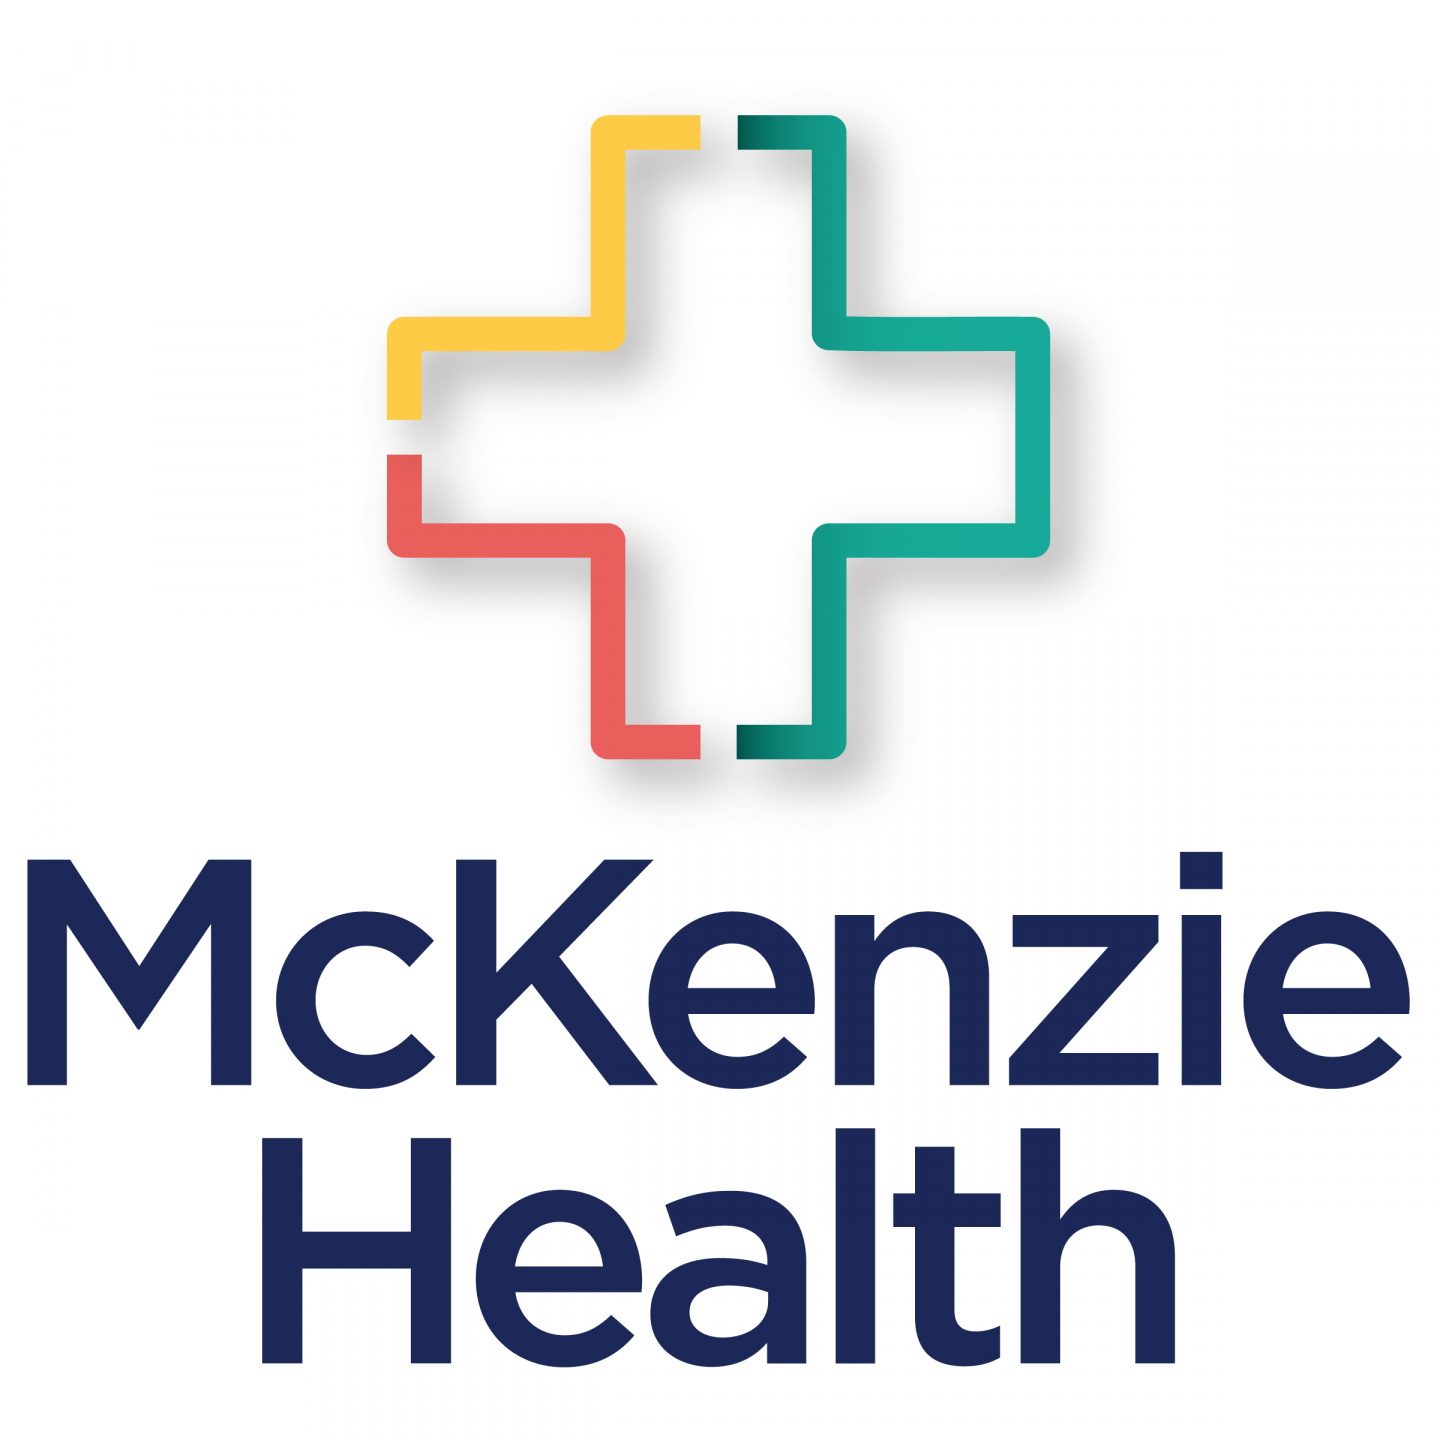 McKenzie Health